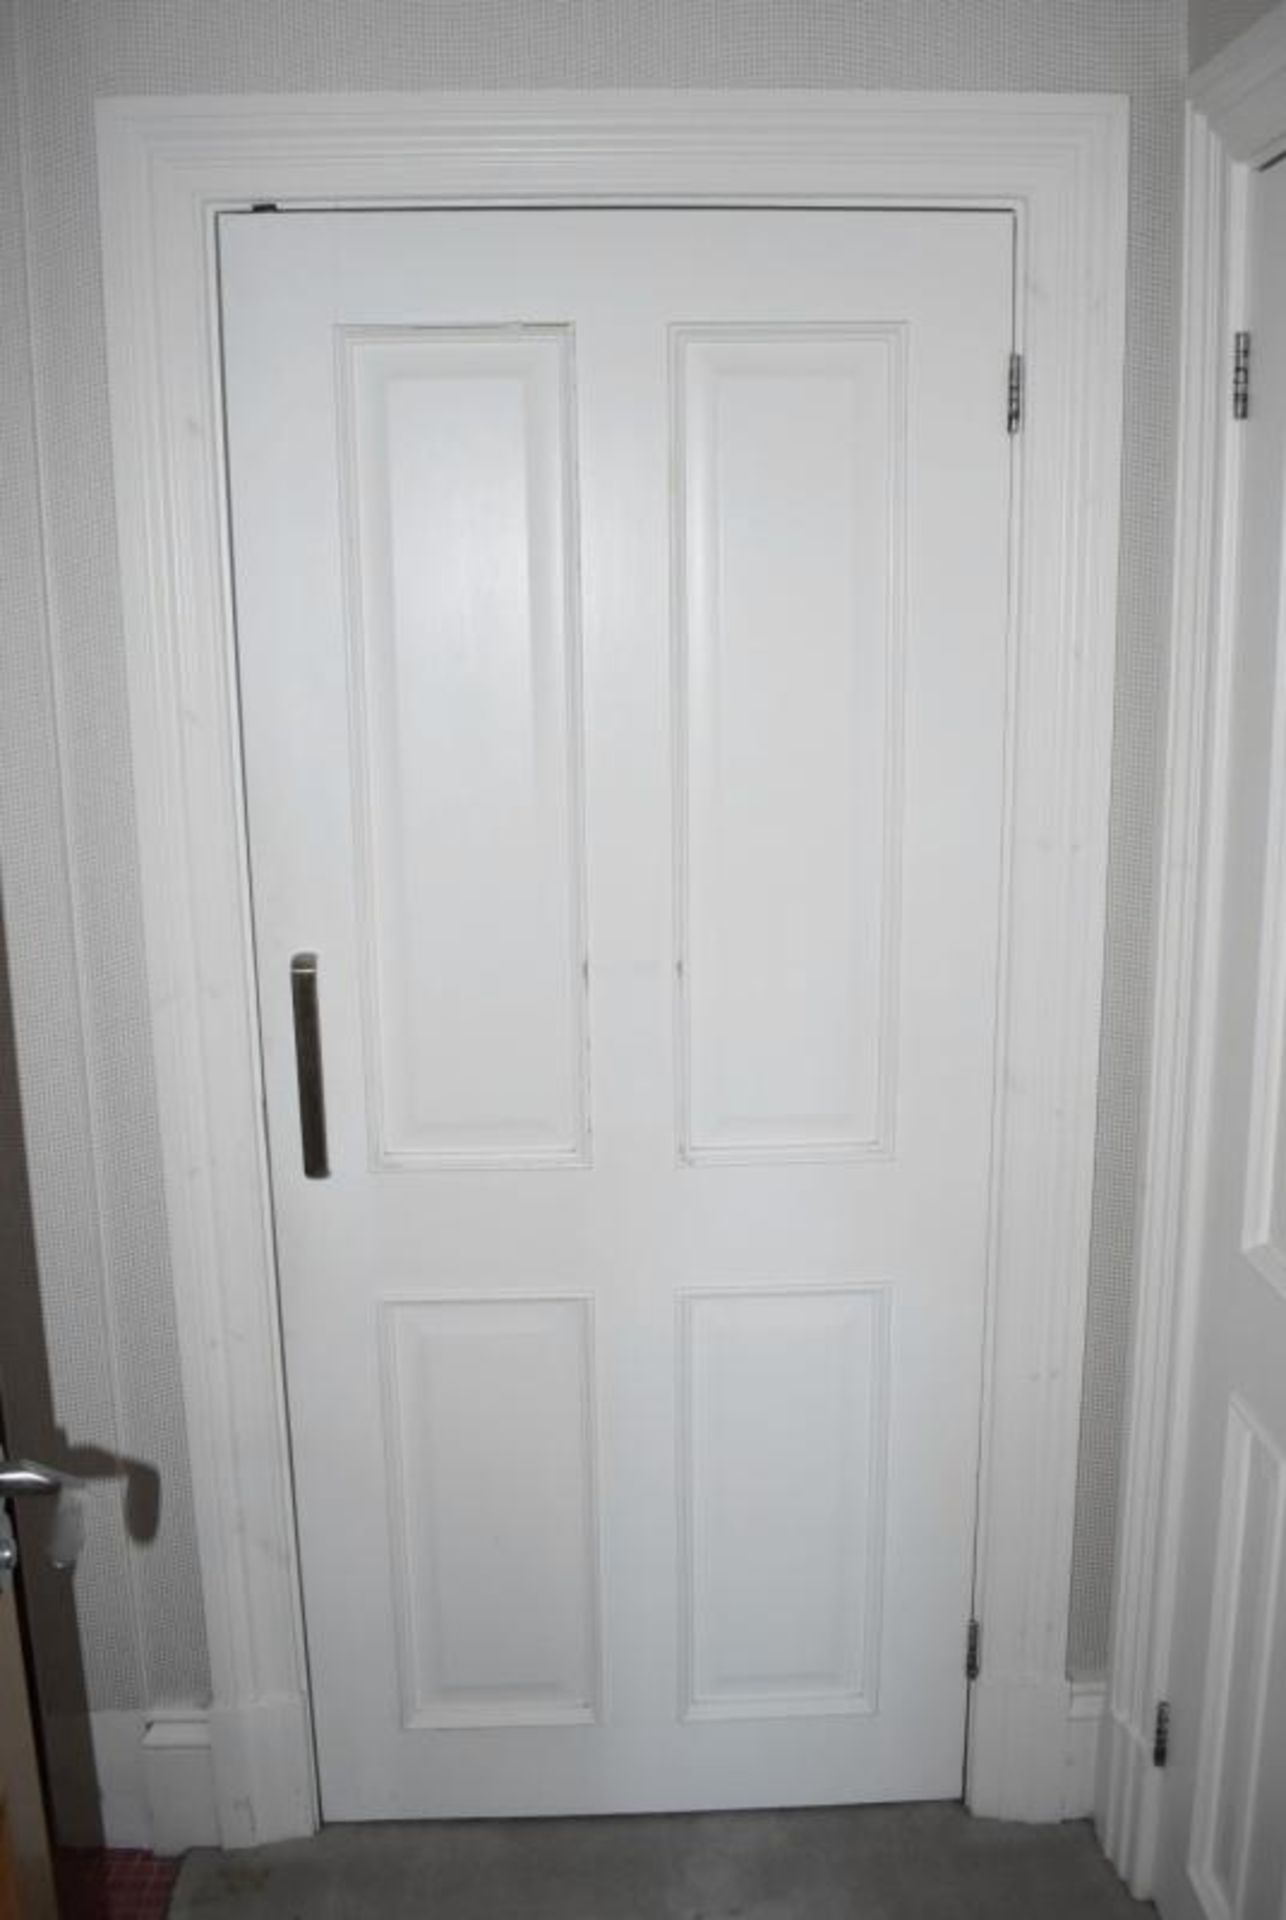 2 x Built-in Wardrobes In White (1 x Double Door, 1 x Single Door) - Ref: ABR069 / GR - CL491 *NO VA - Image 2 of 4